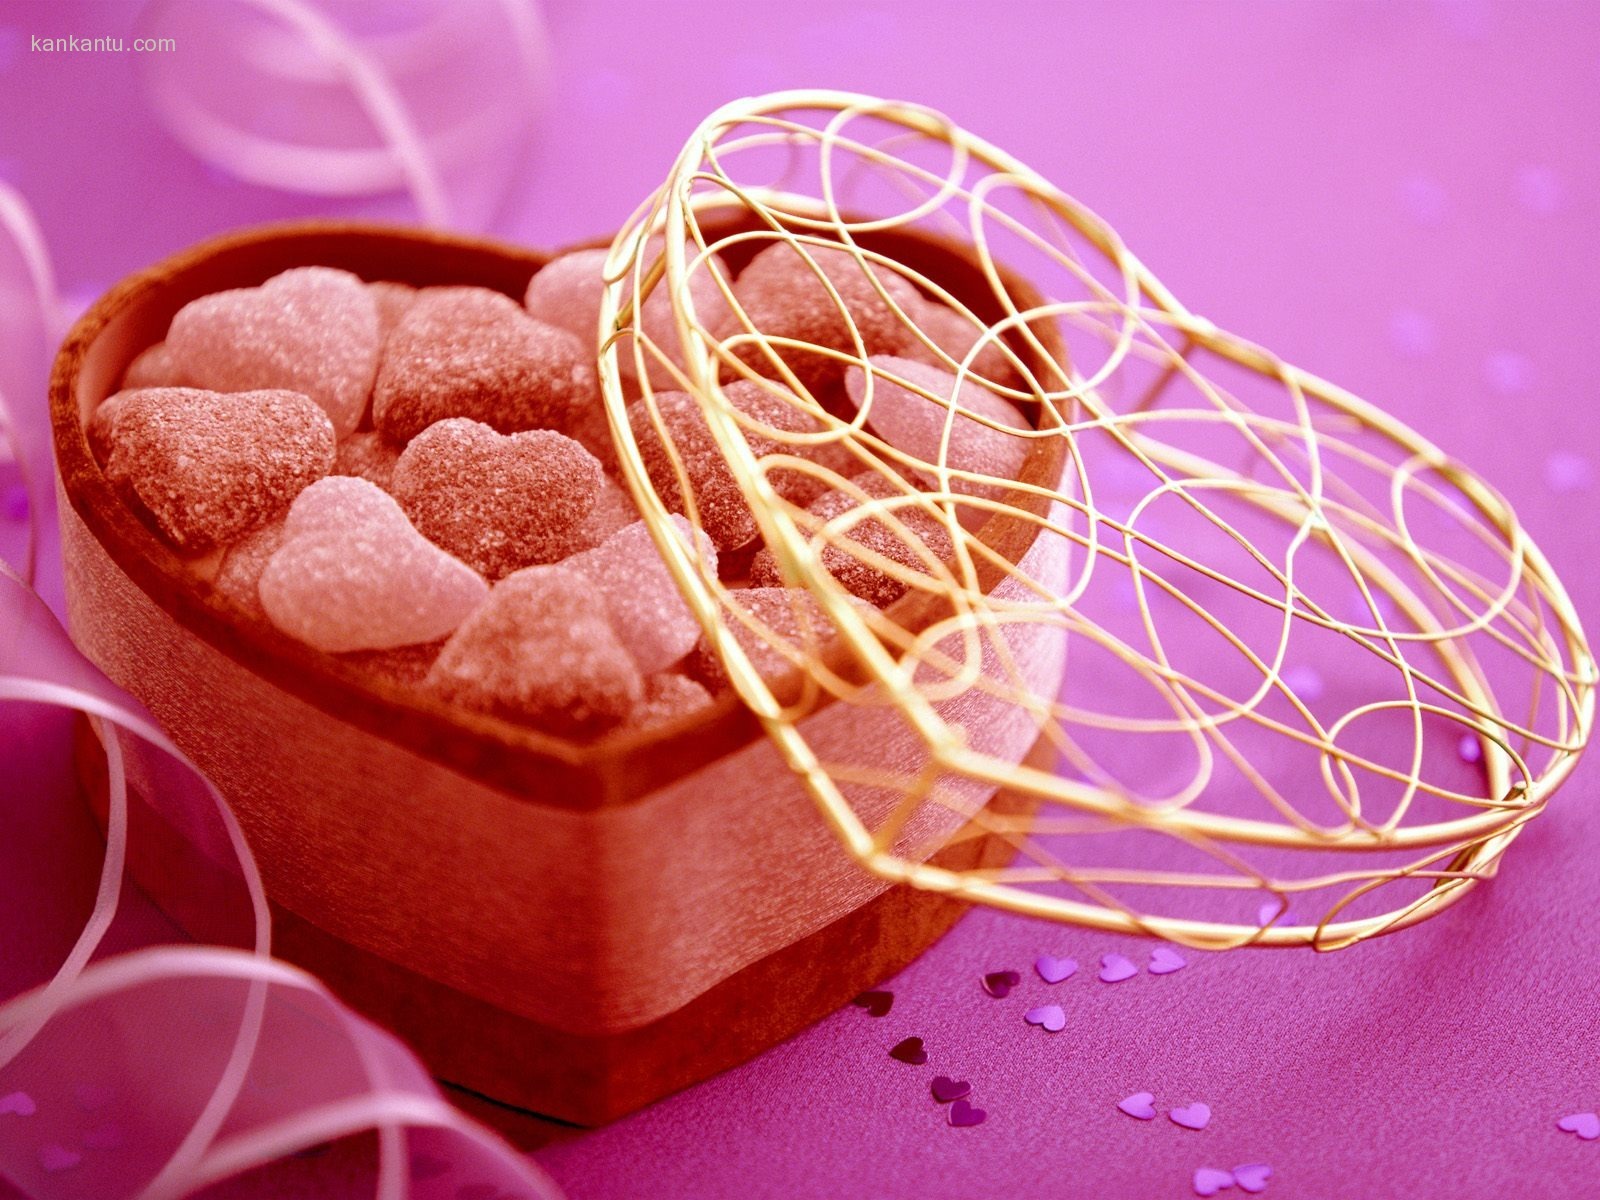 La tinta indeleble Día de San Valentín de chocolate #1 - 1600x1200